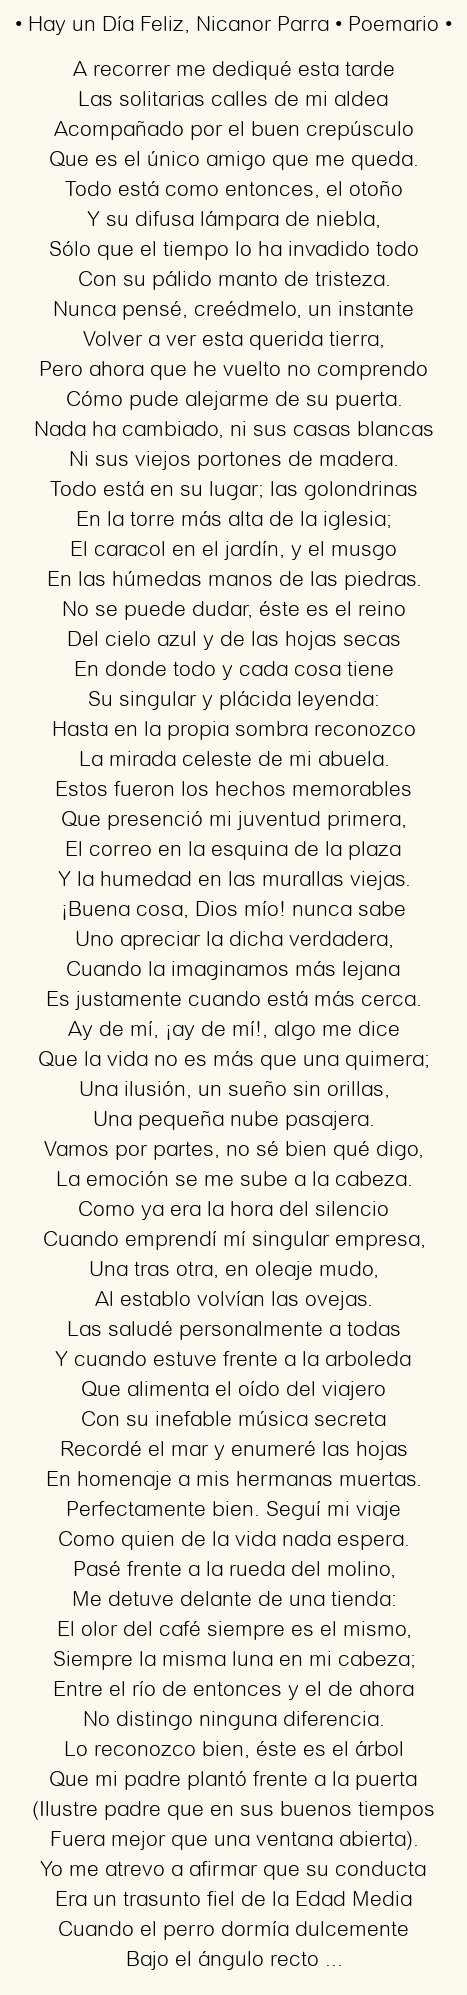 Imagen con el poema Hay un Día Feliz, por Nicanor Parra